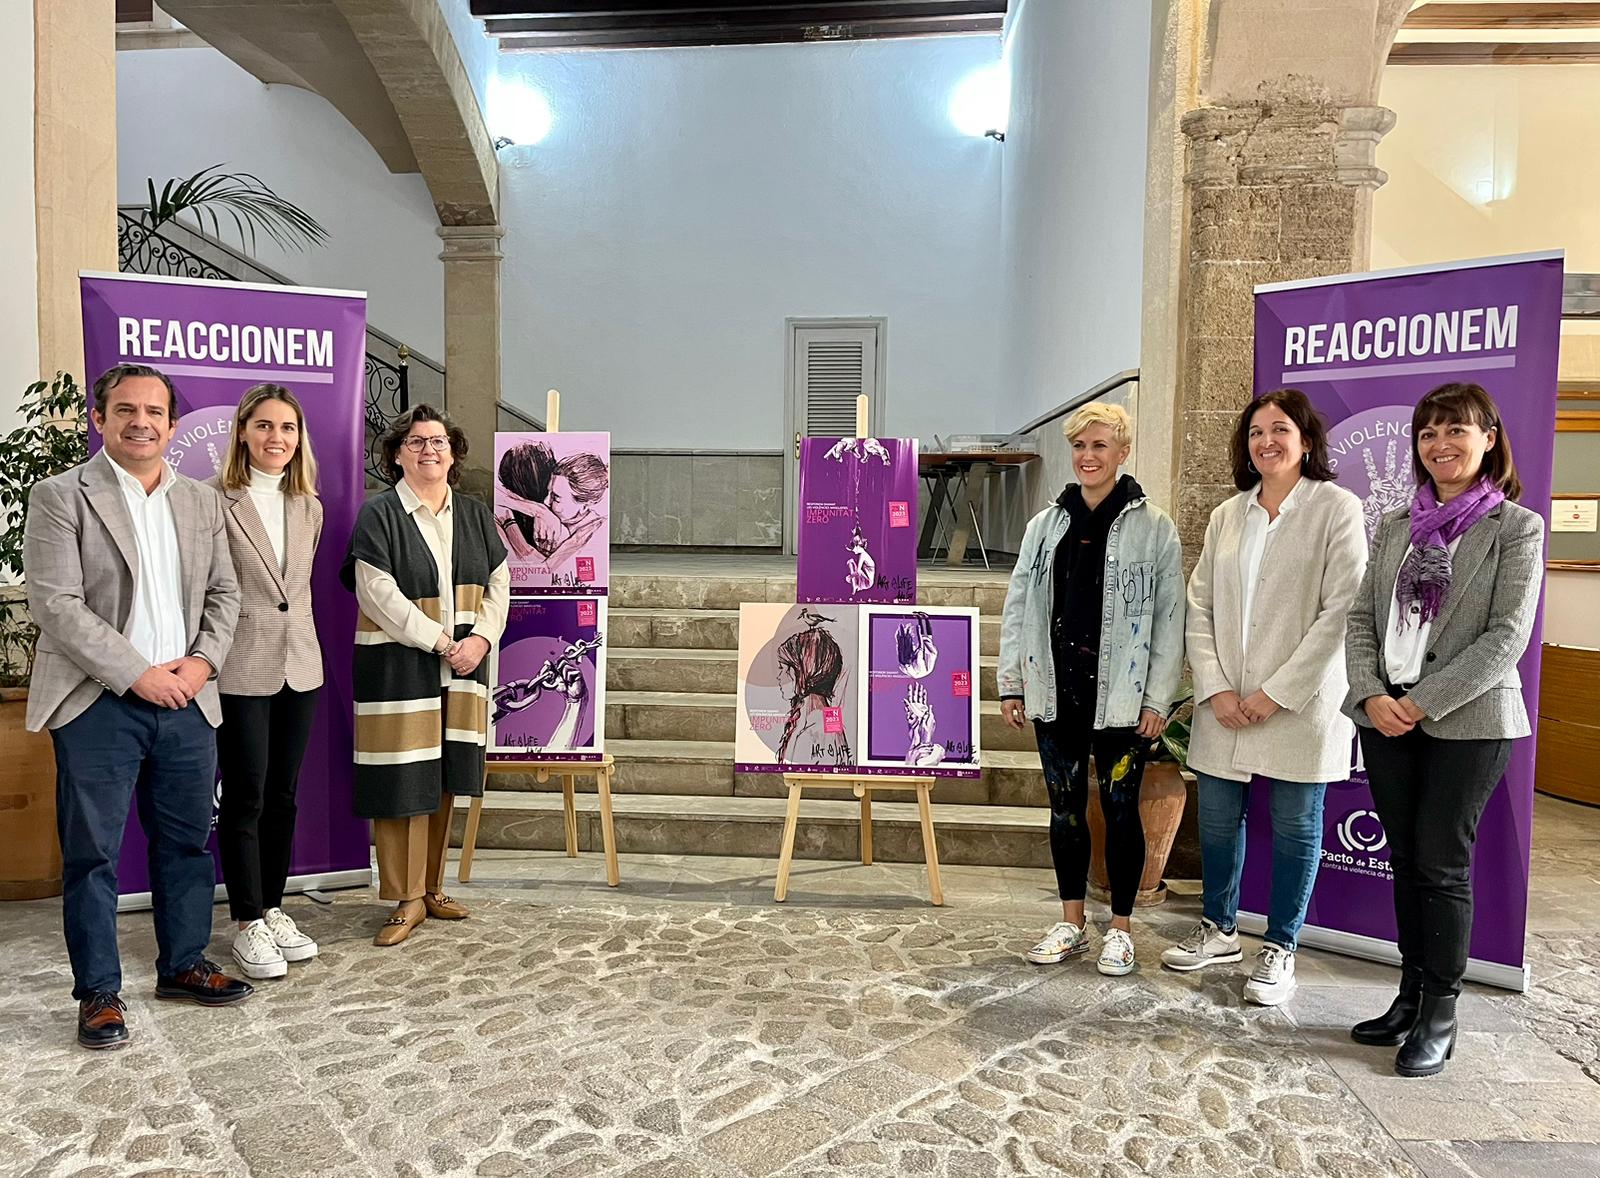 Representants de les institucions de les Illes Balears han presentat els actes del Dia Internacional per a l’Eliminació de la Violència contra les Dones que han organitzat de forma conjunta